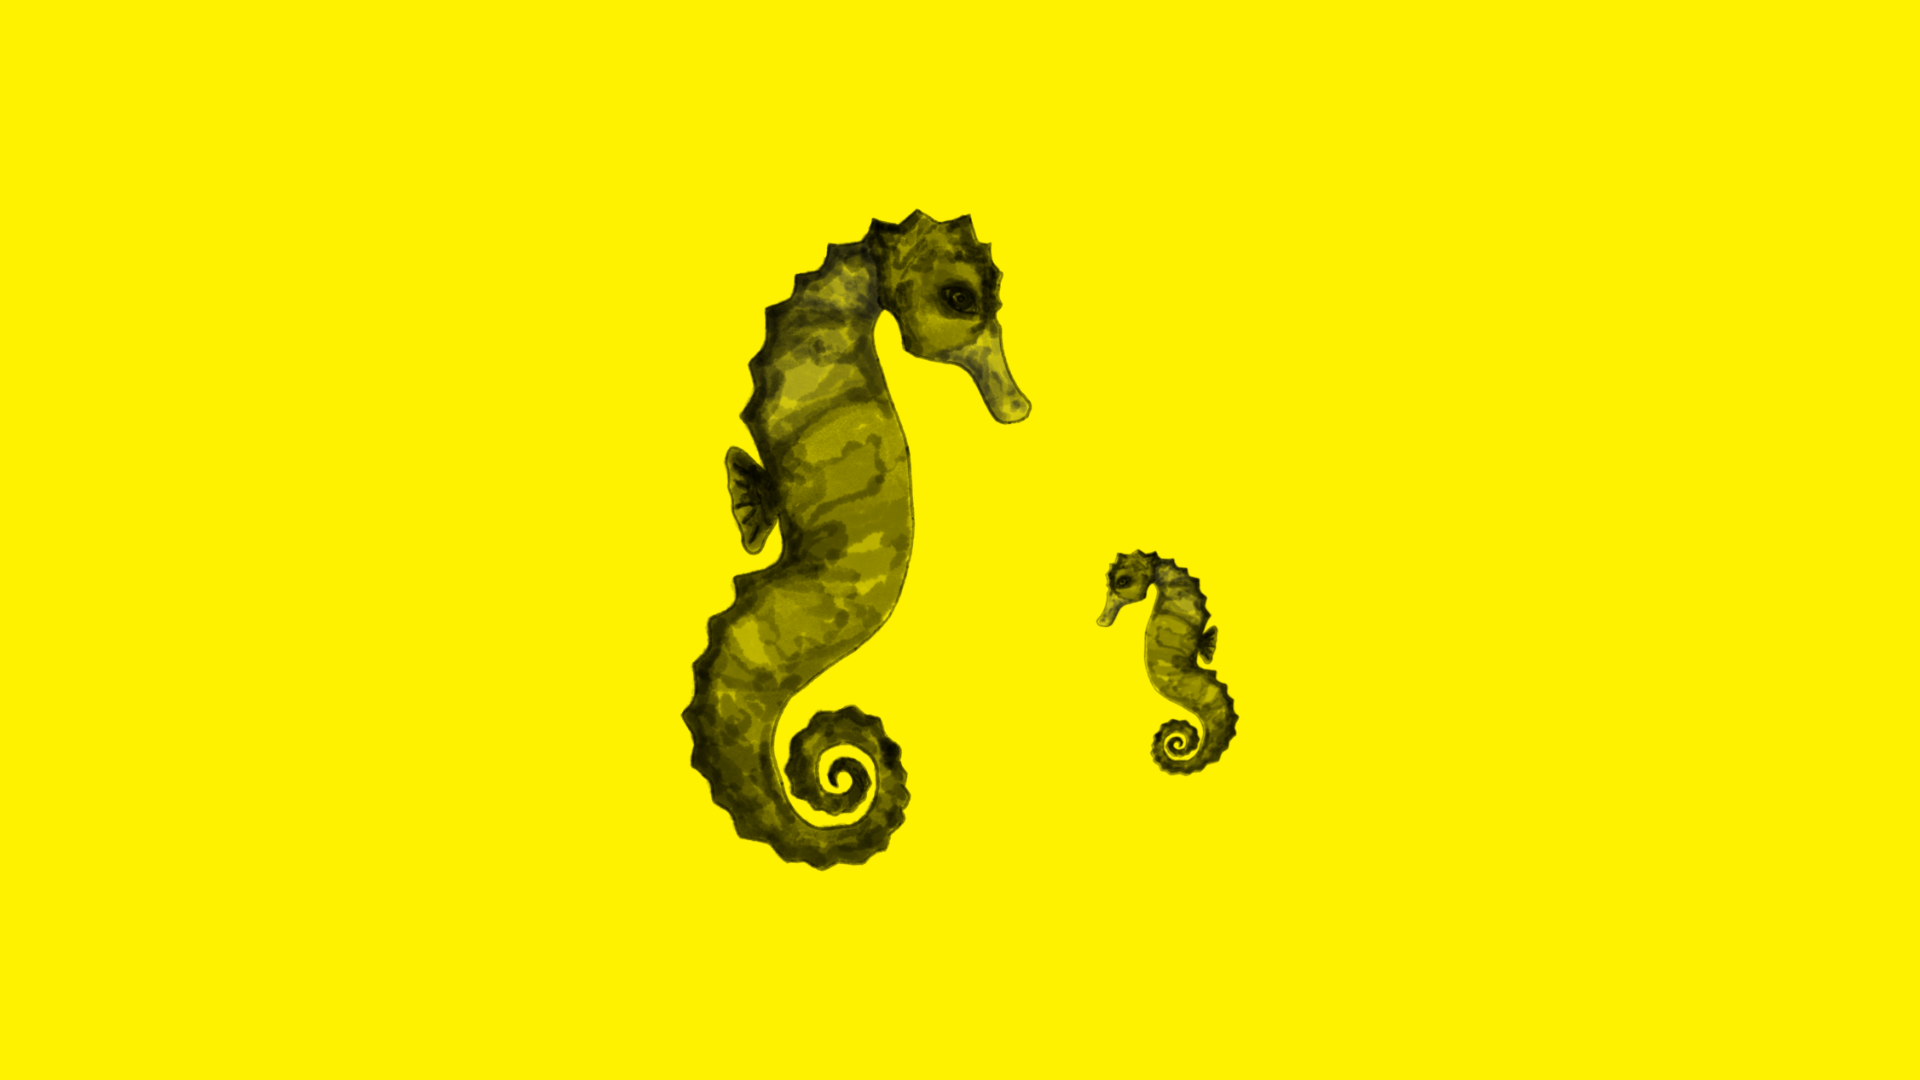 Czarny rysunek dwóch koników morskich na żółtym tle